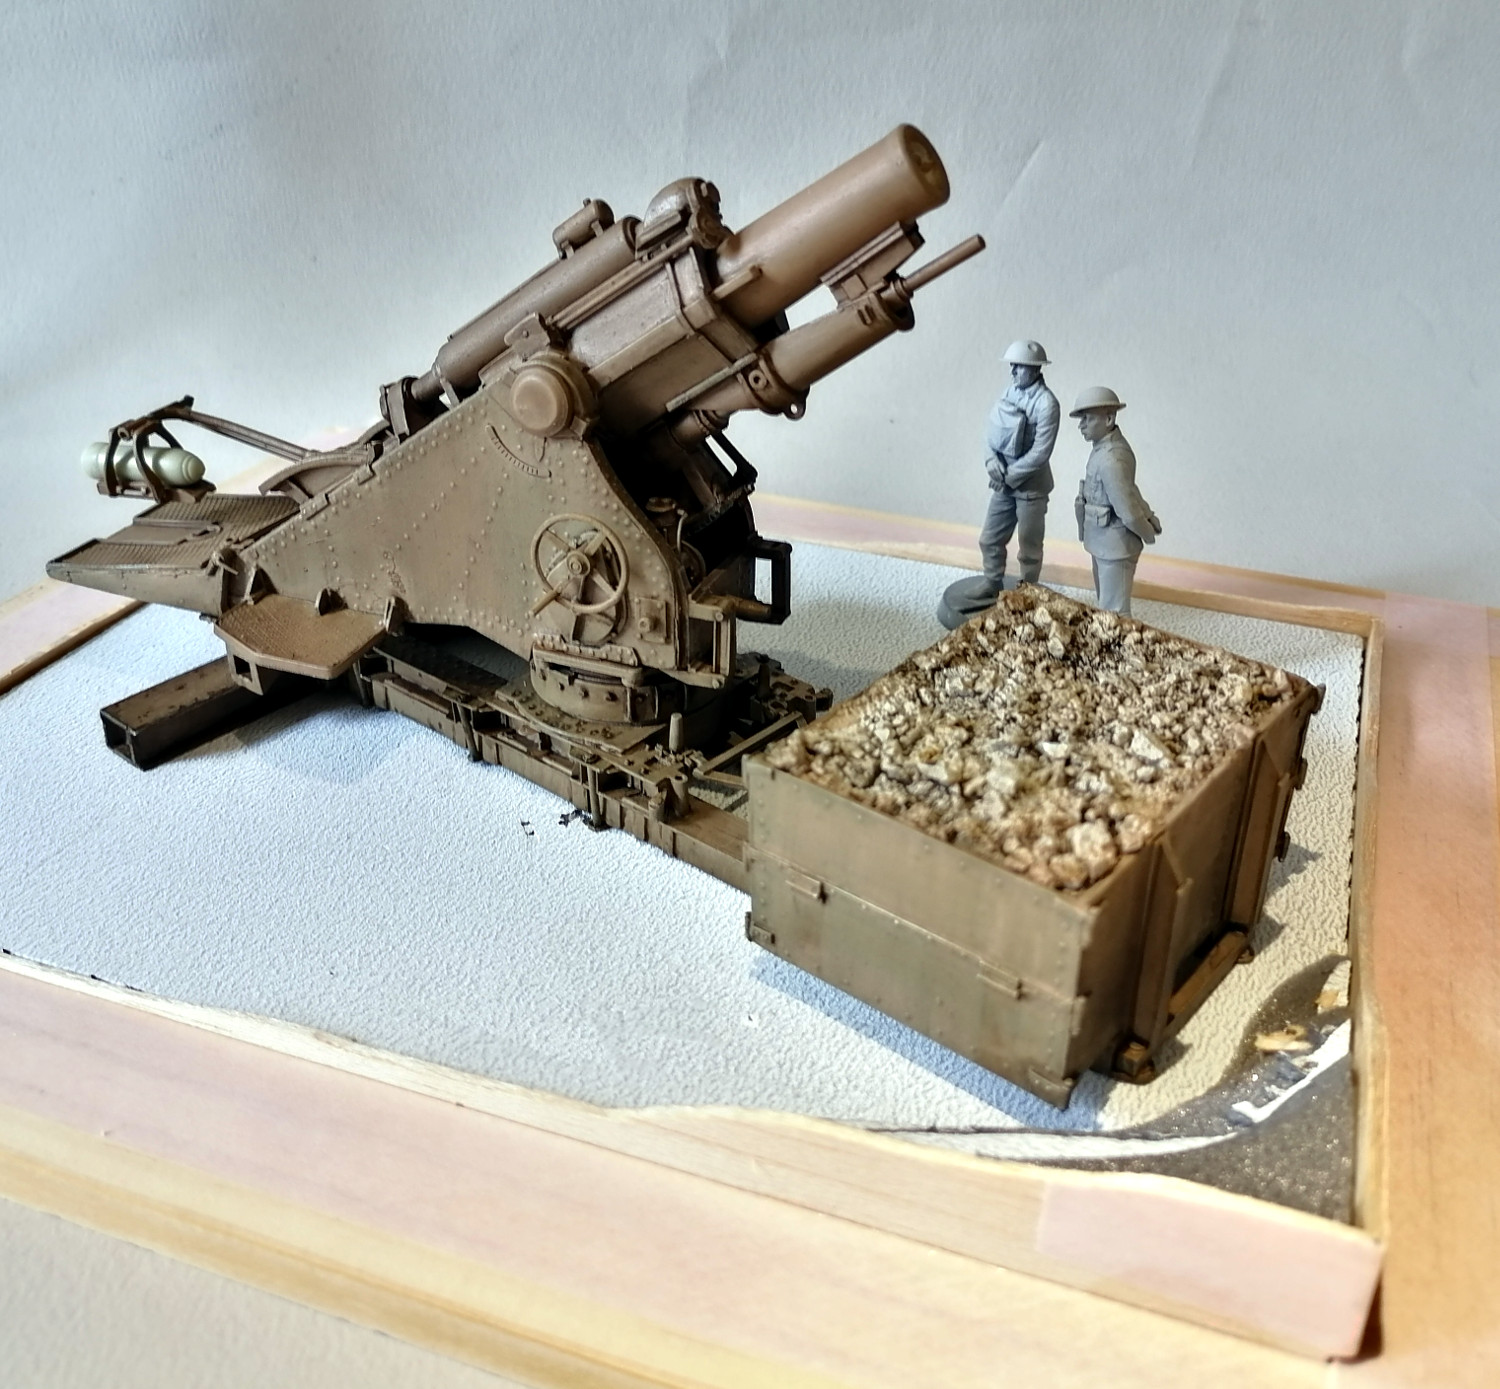 [RESICAST] Mortier de 9,2 inch Réf 35 1244 Pkw3Ob-Howitzer53